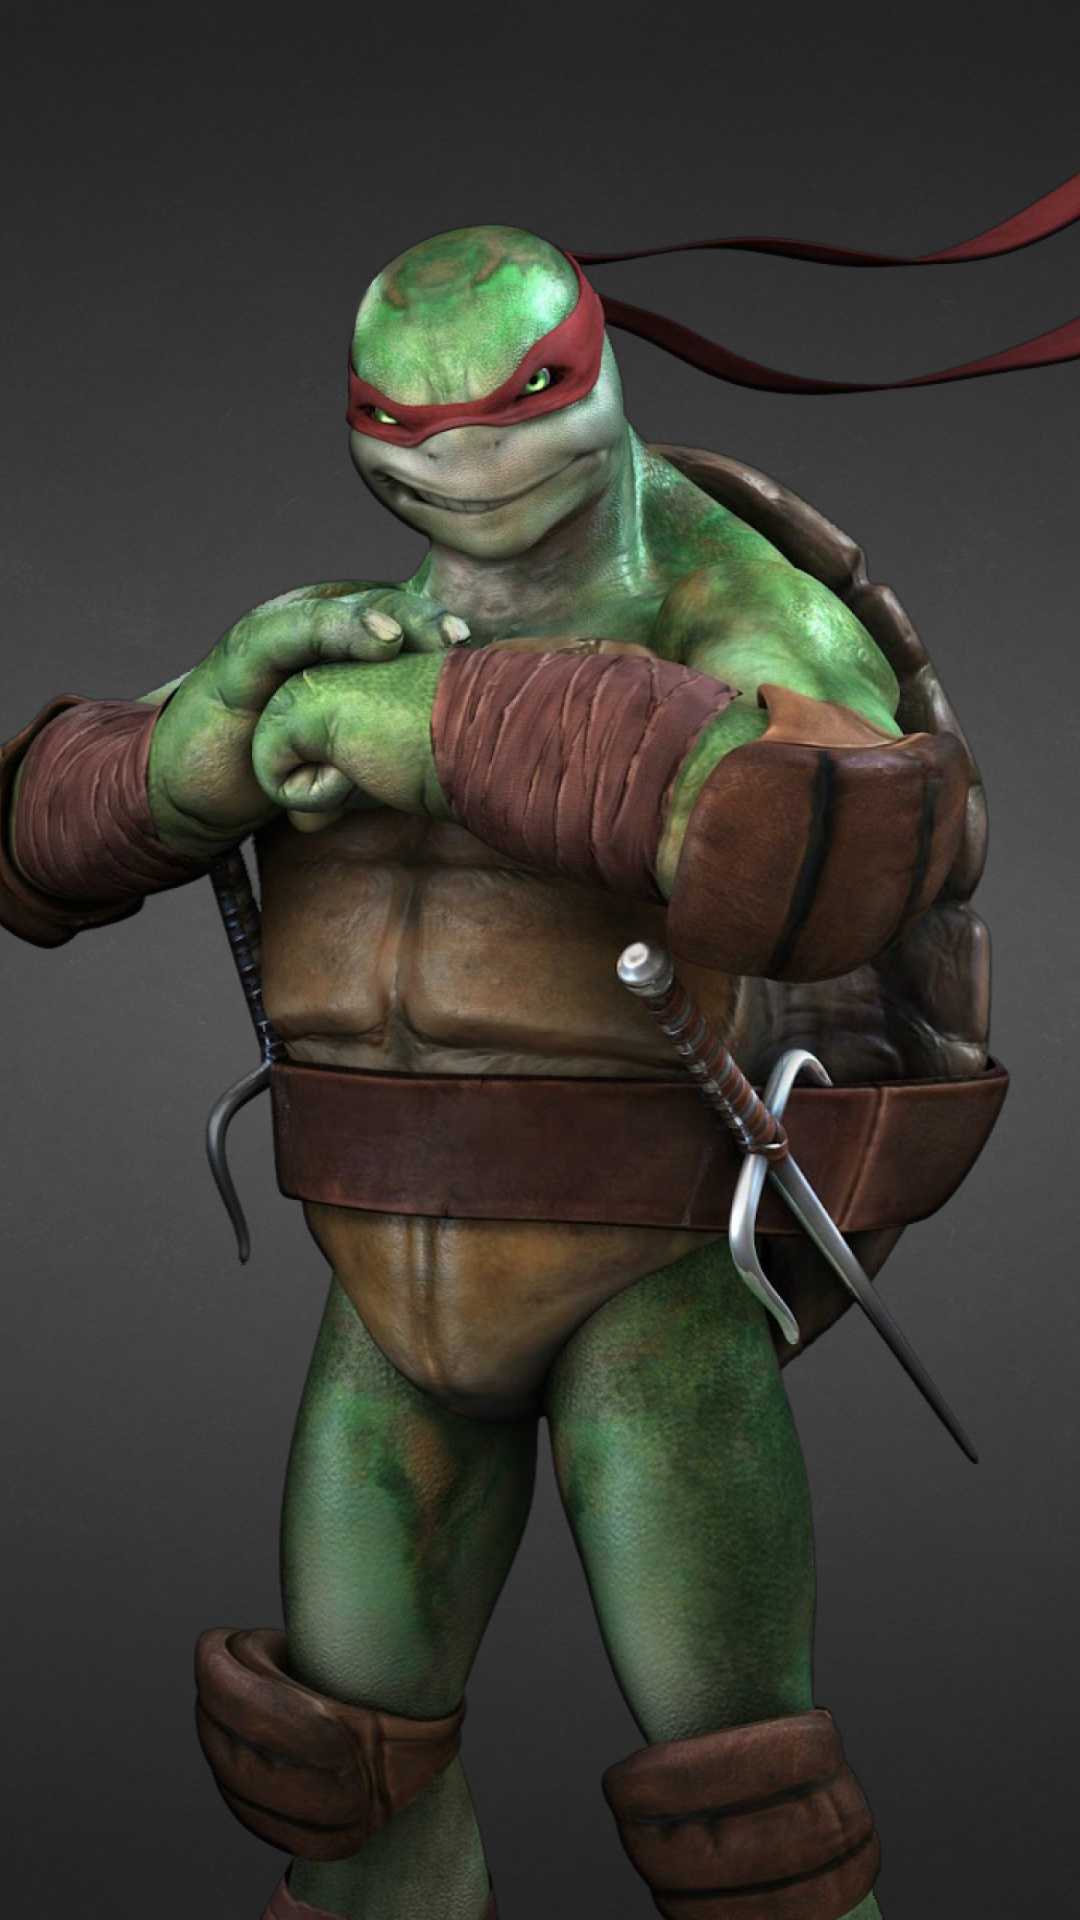 Sfondi Raphael - Teenage Mutant inja Turtles 1080x1920